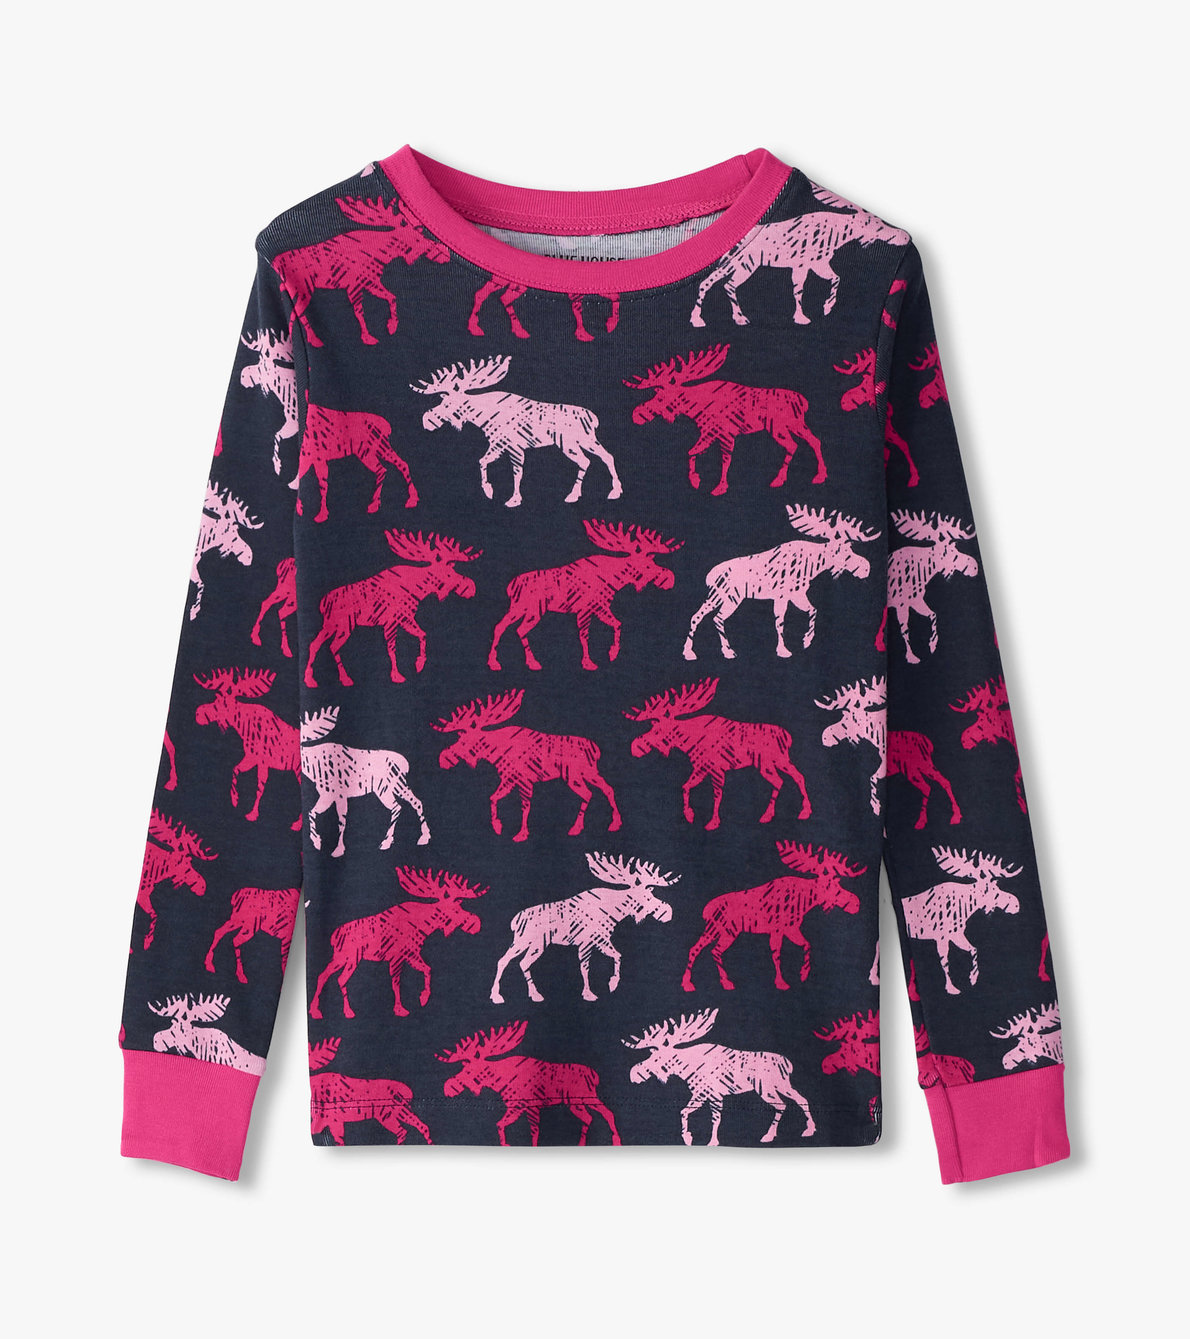 View larger image of Raspberry Moose Kids Pajama Set